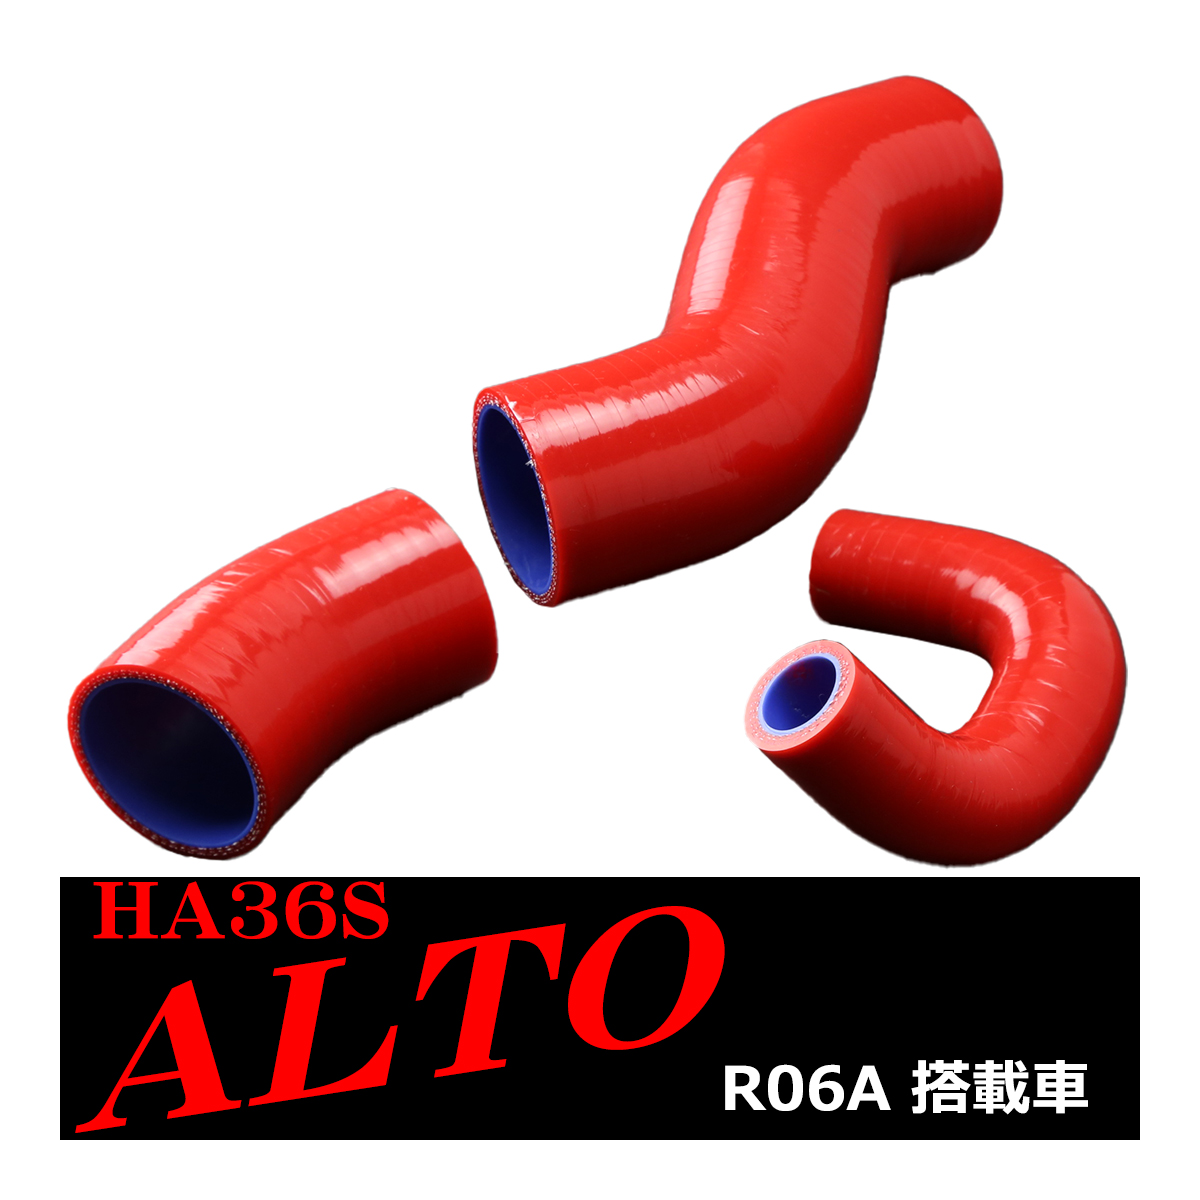 HA36S アルト ターボRS / アルト ワークス シリコン ターボ ホース 